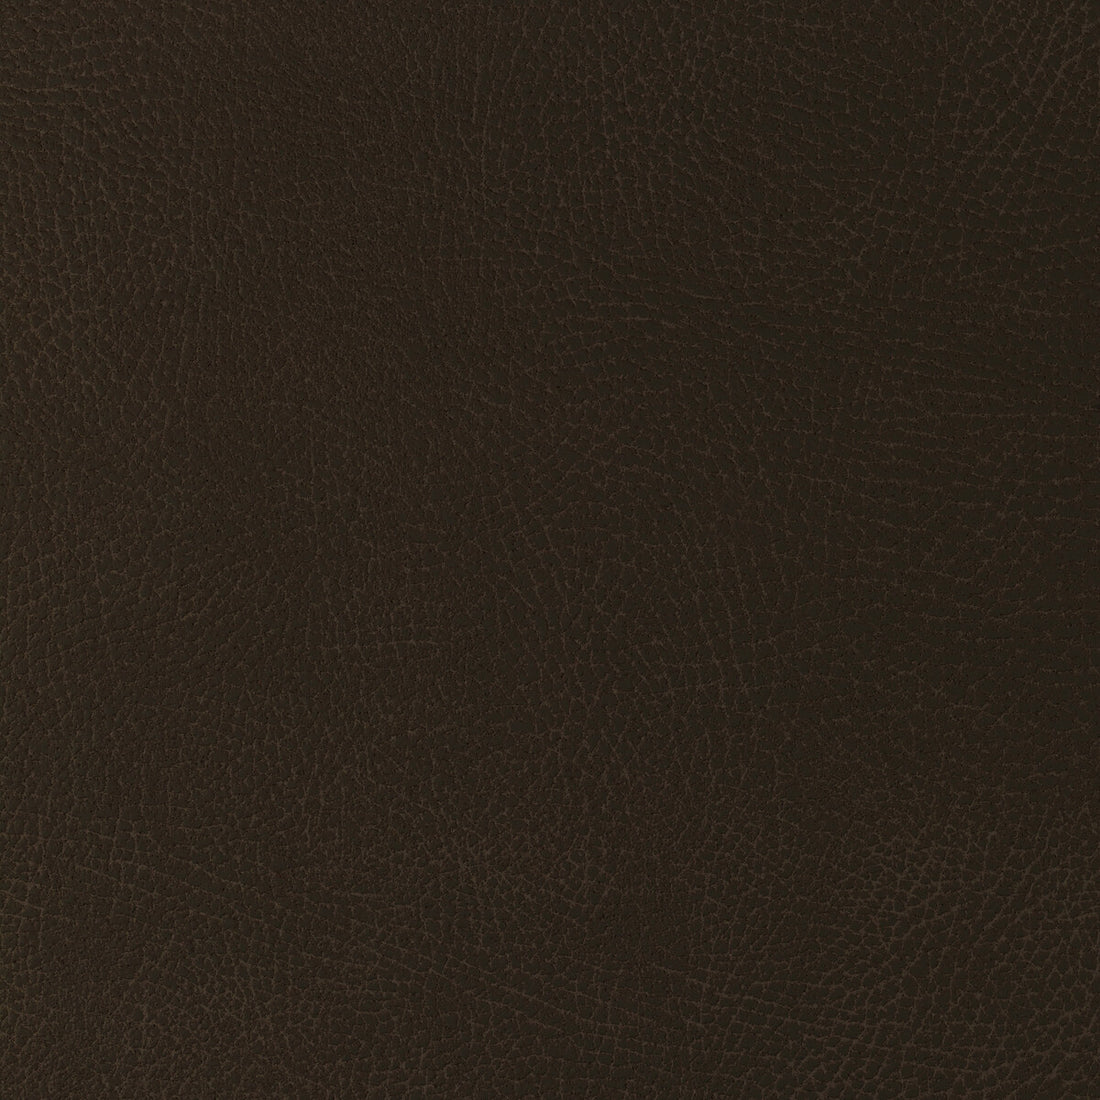 Kravet Design fabric in glendale-6166 color - pattern GLENDALE.6166.0 - by Kravet Design